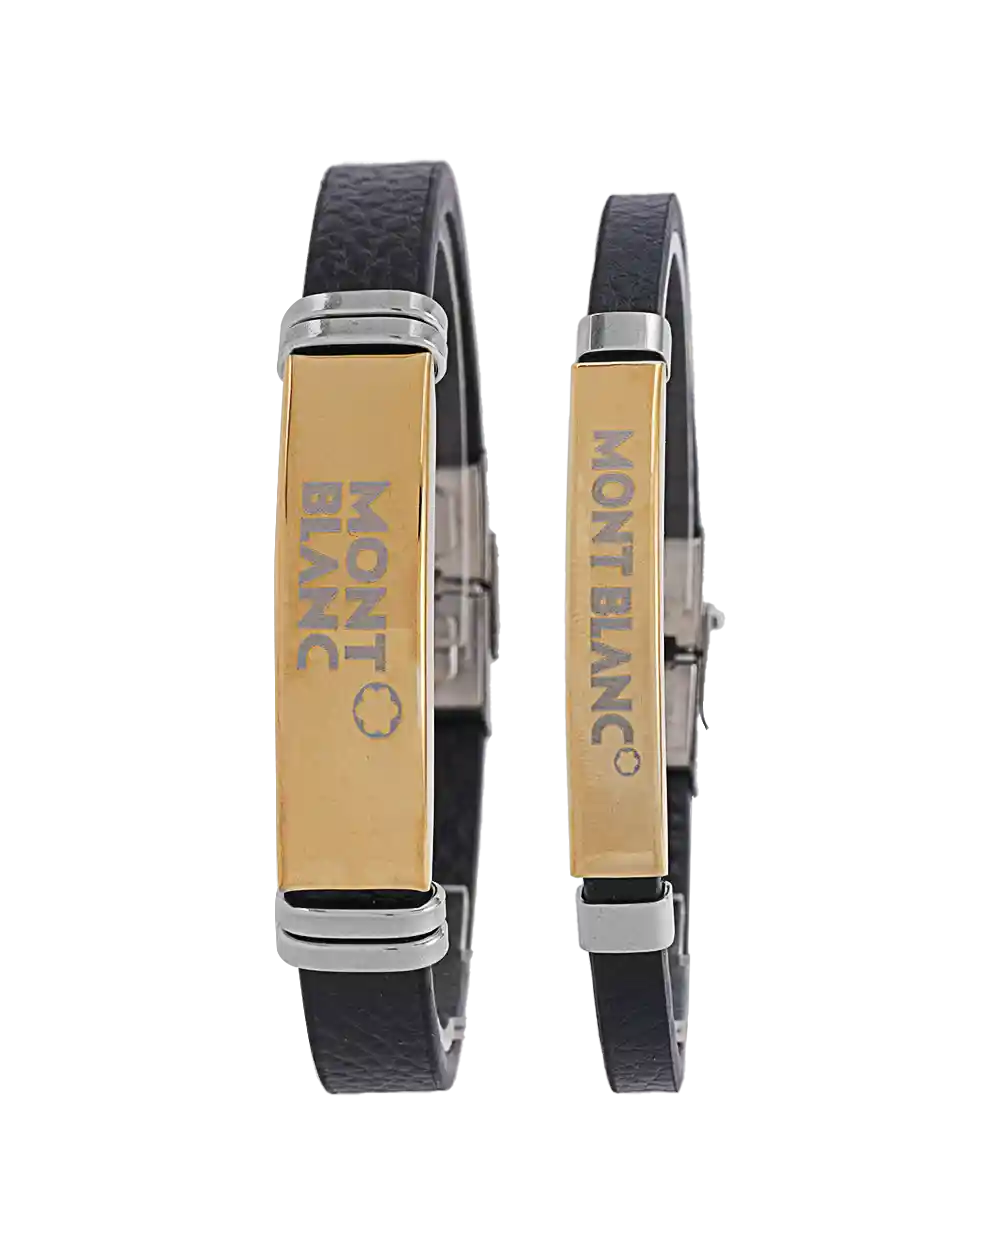 خرید ست دستبند چرمی طرح مونت بلانک مدل 1610 با بهترین قیمت به همراه جعبه کادویی و ارسال رایگان به سراسر ایران | ست دستبند مردانه و زنانه